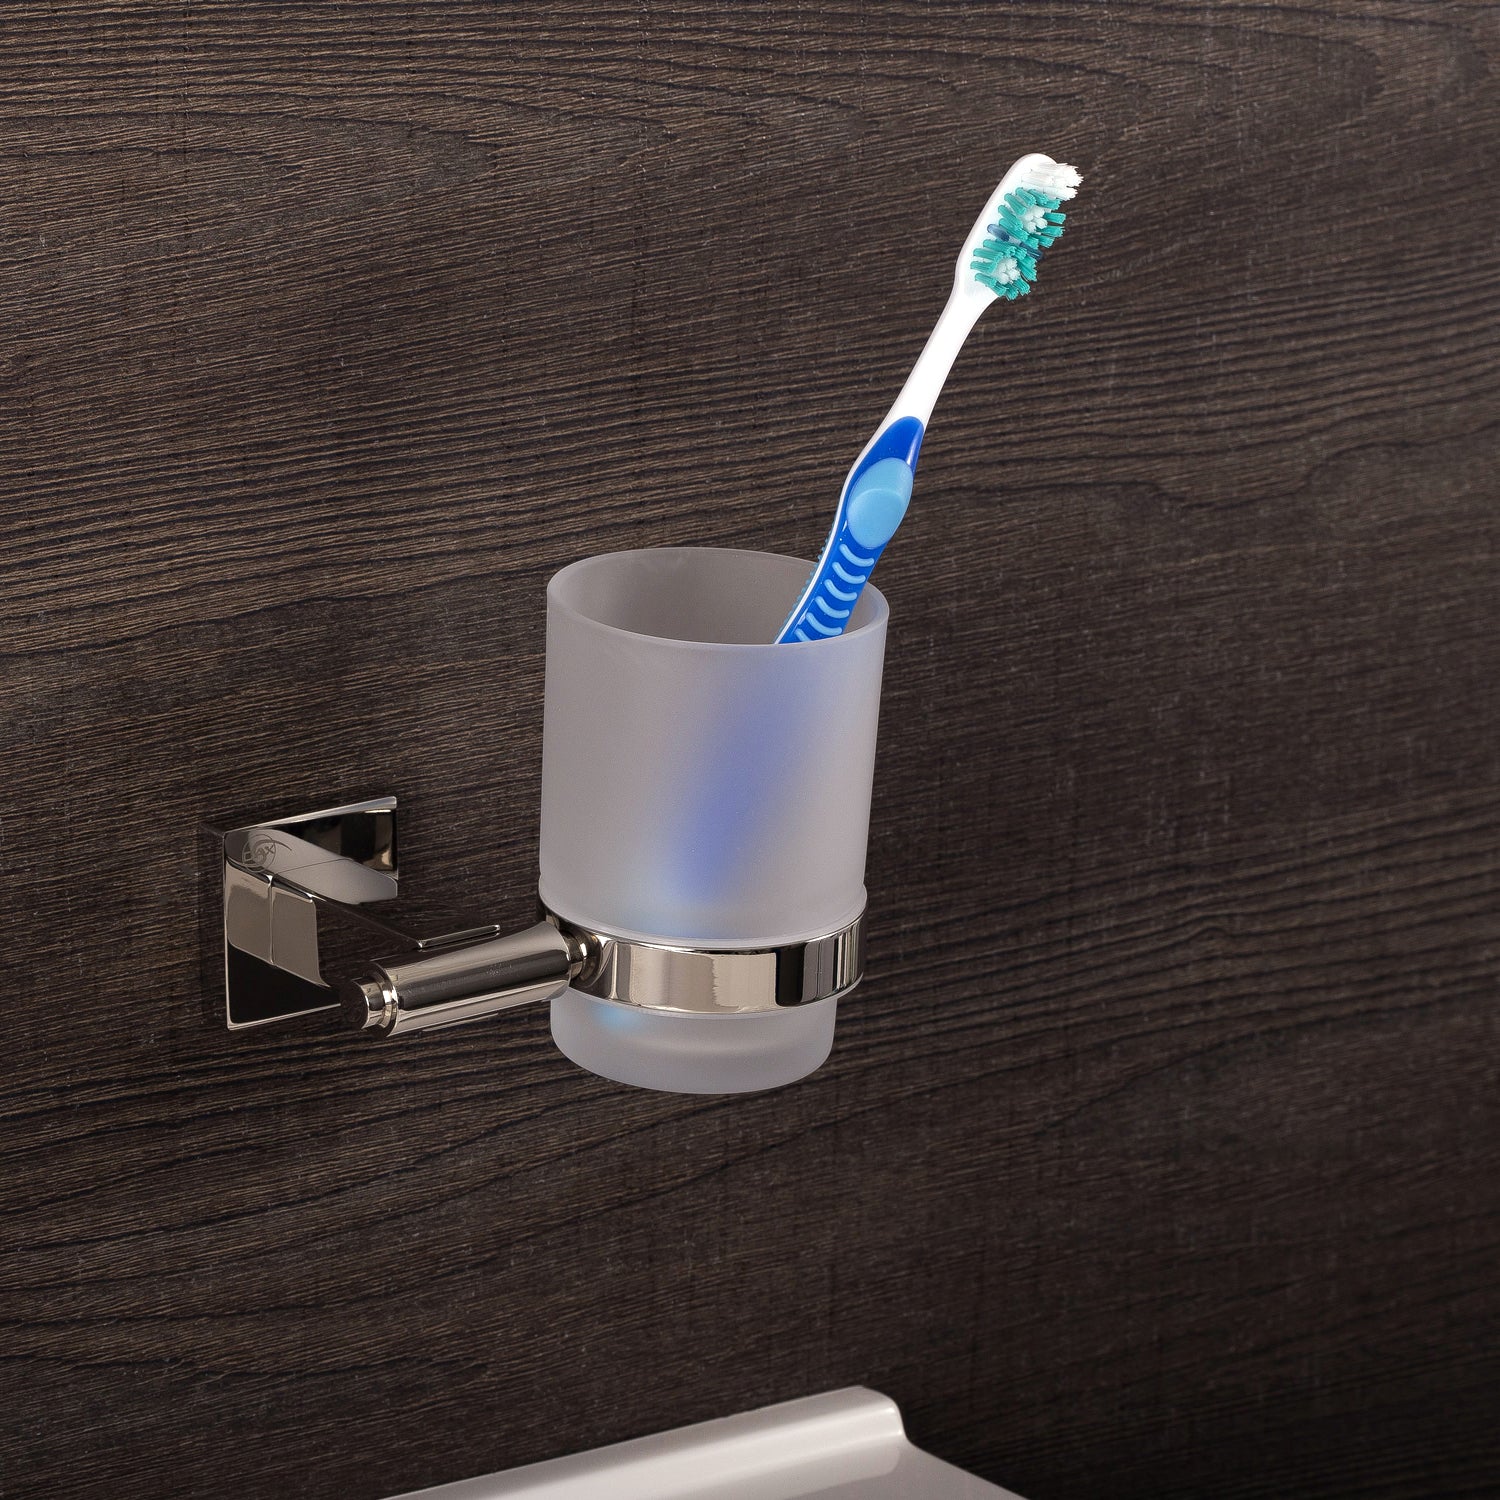 DAX - Soporte para cepillo de dientes de vaso individual para baño, montaje en pared de acero inoxidable con vaso de vidrio, acabado satinado, 3-3/4 x 3-3/4 x 4-1/2 pulgadas (DAX-G0106-S) 